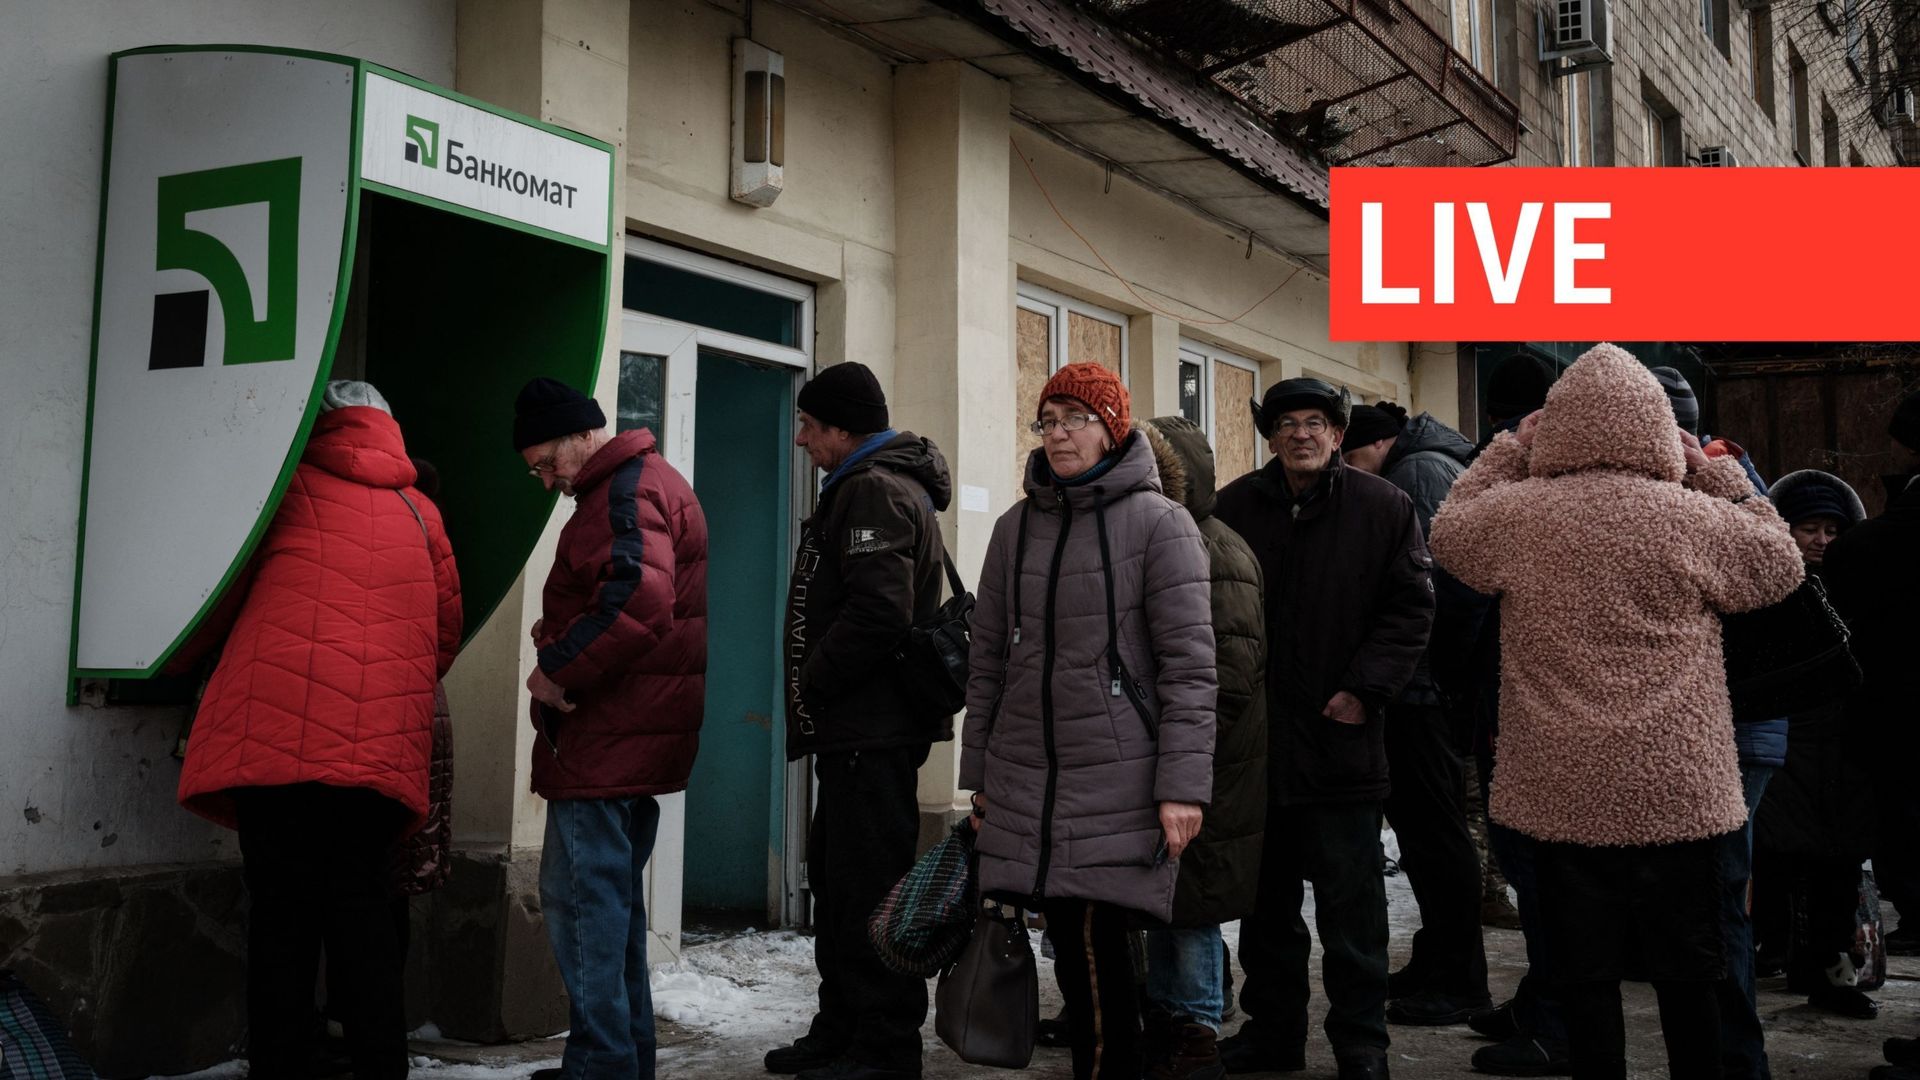 Live – La guerra in Ucraina: perché alcune persone restano in prima linea?